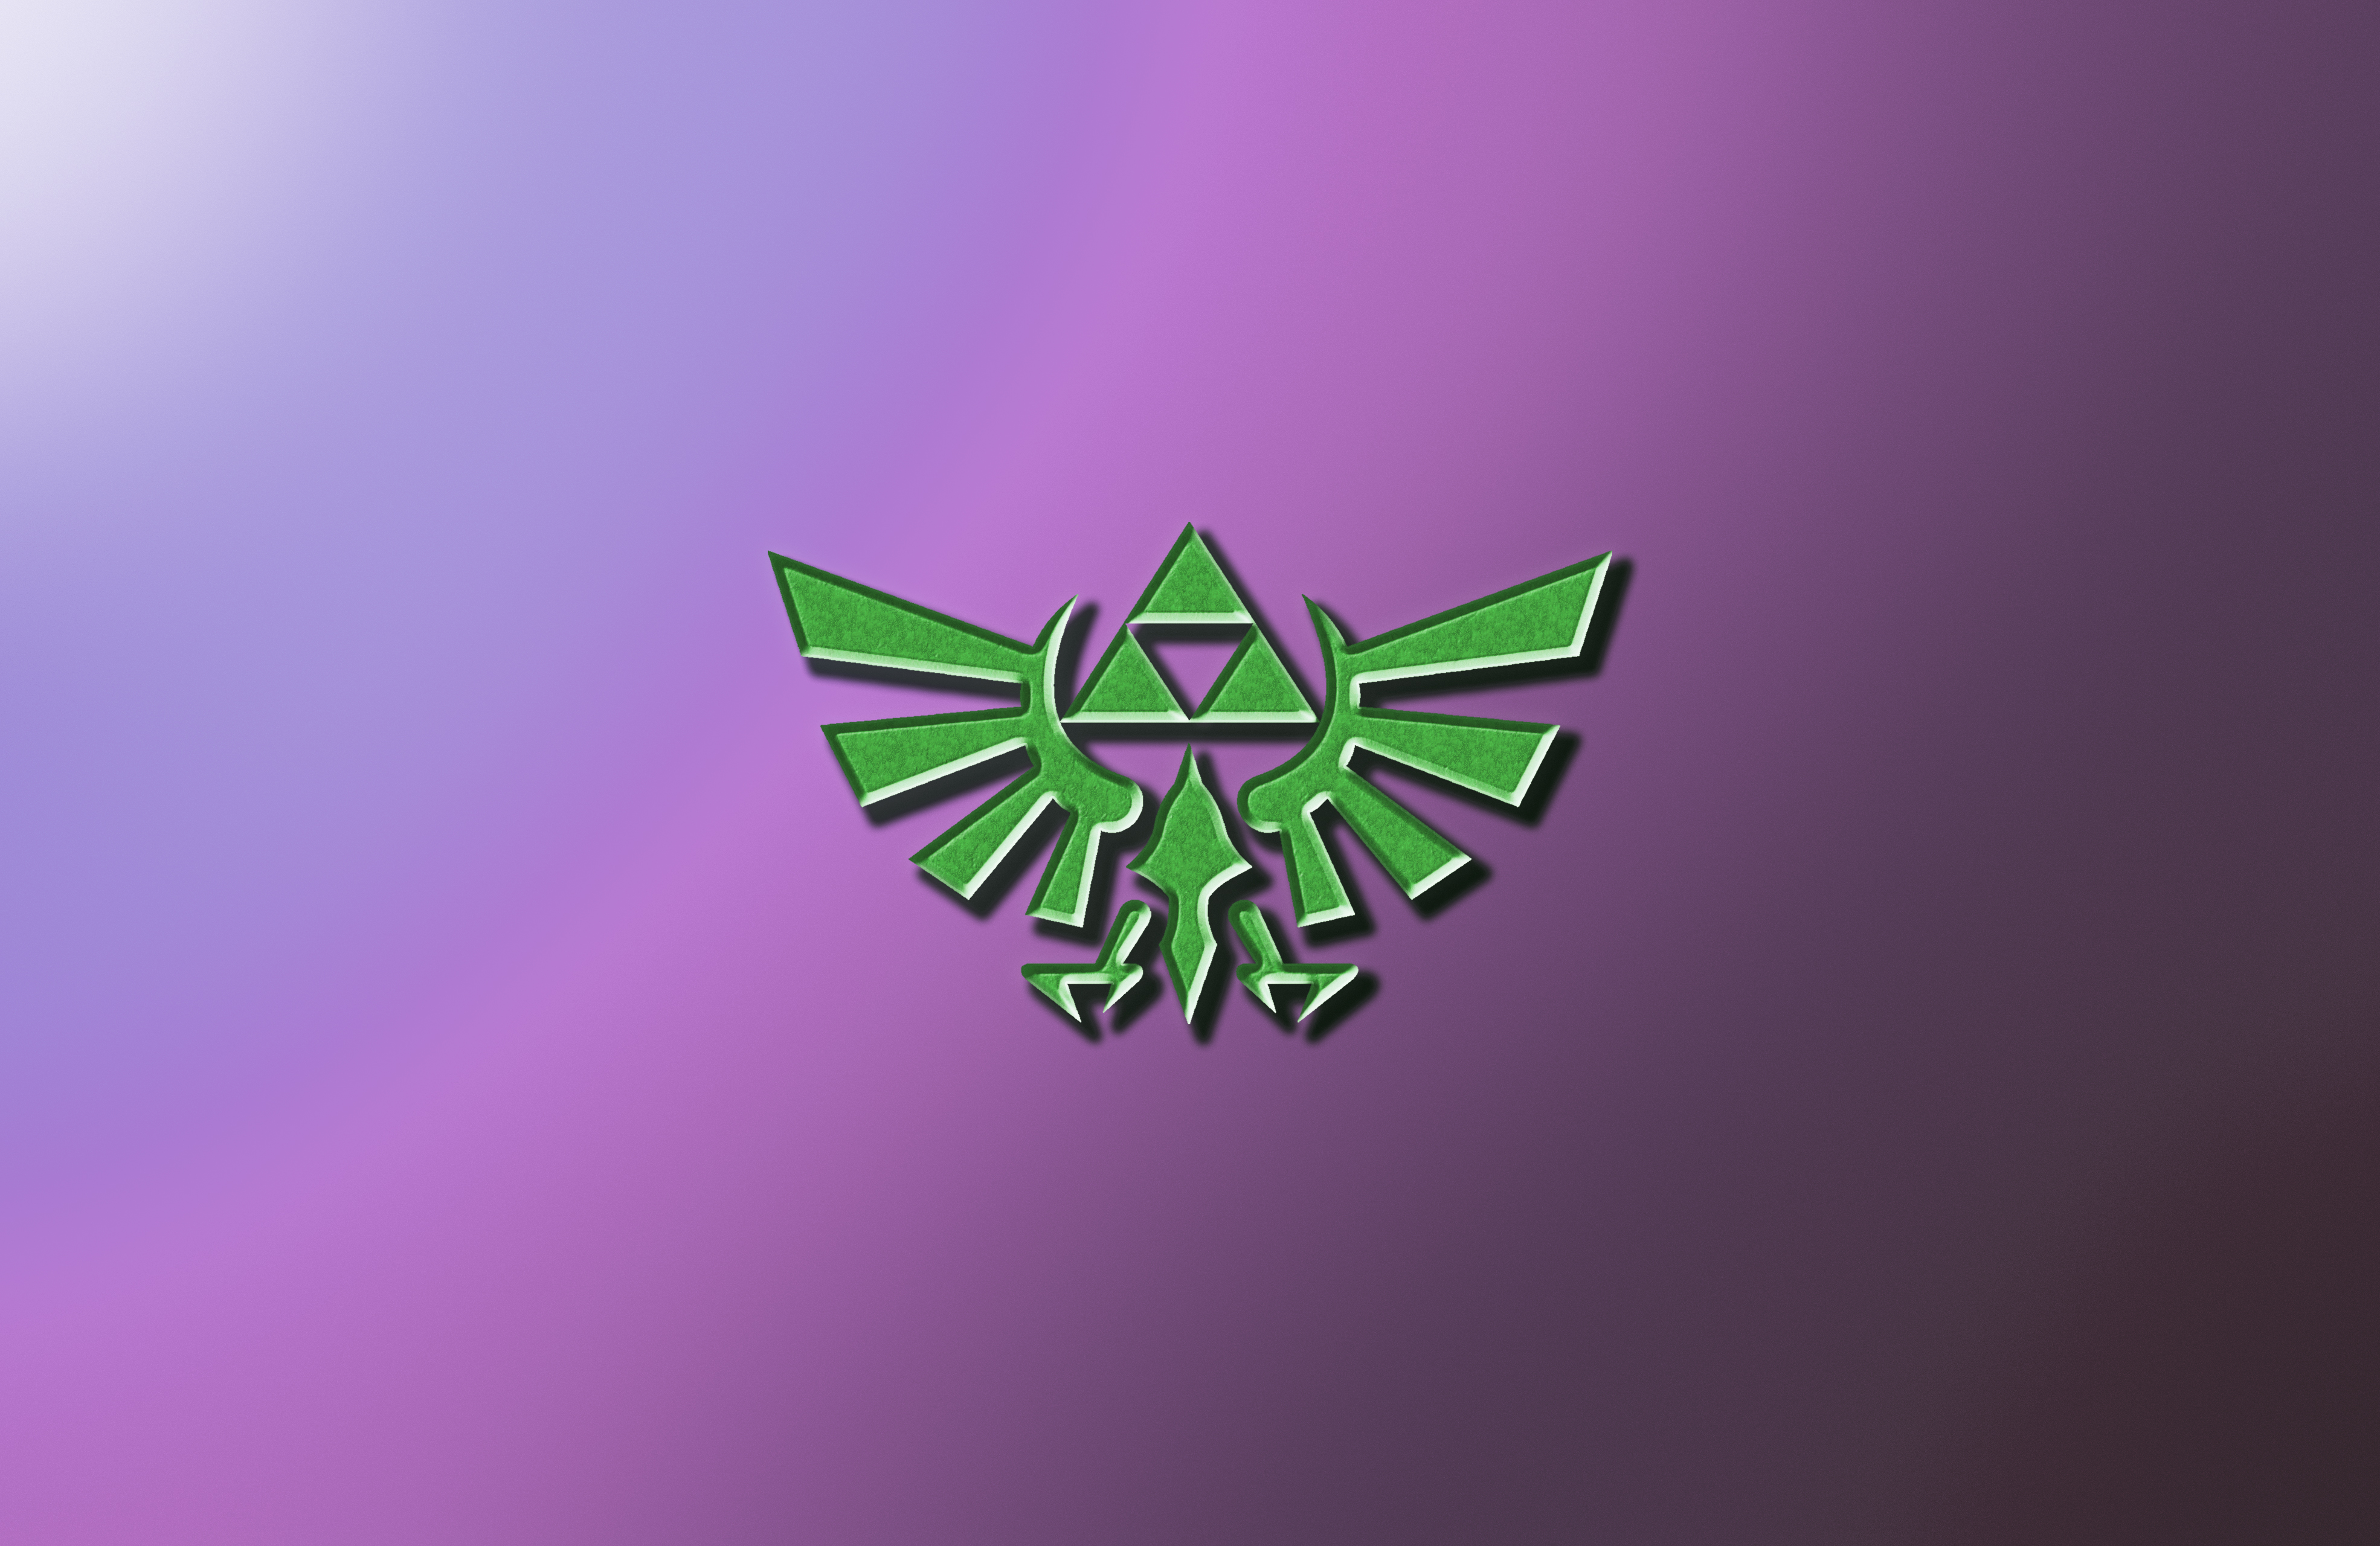 Zelda Breath Of The Wild The Legend Of Zelda Nintendo Green Purple Background Gradient 3940x2560